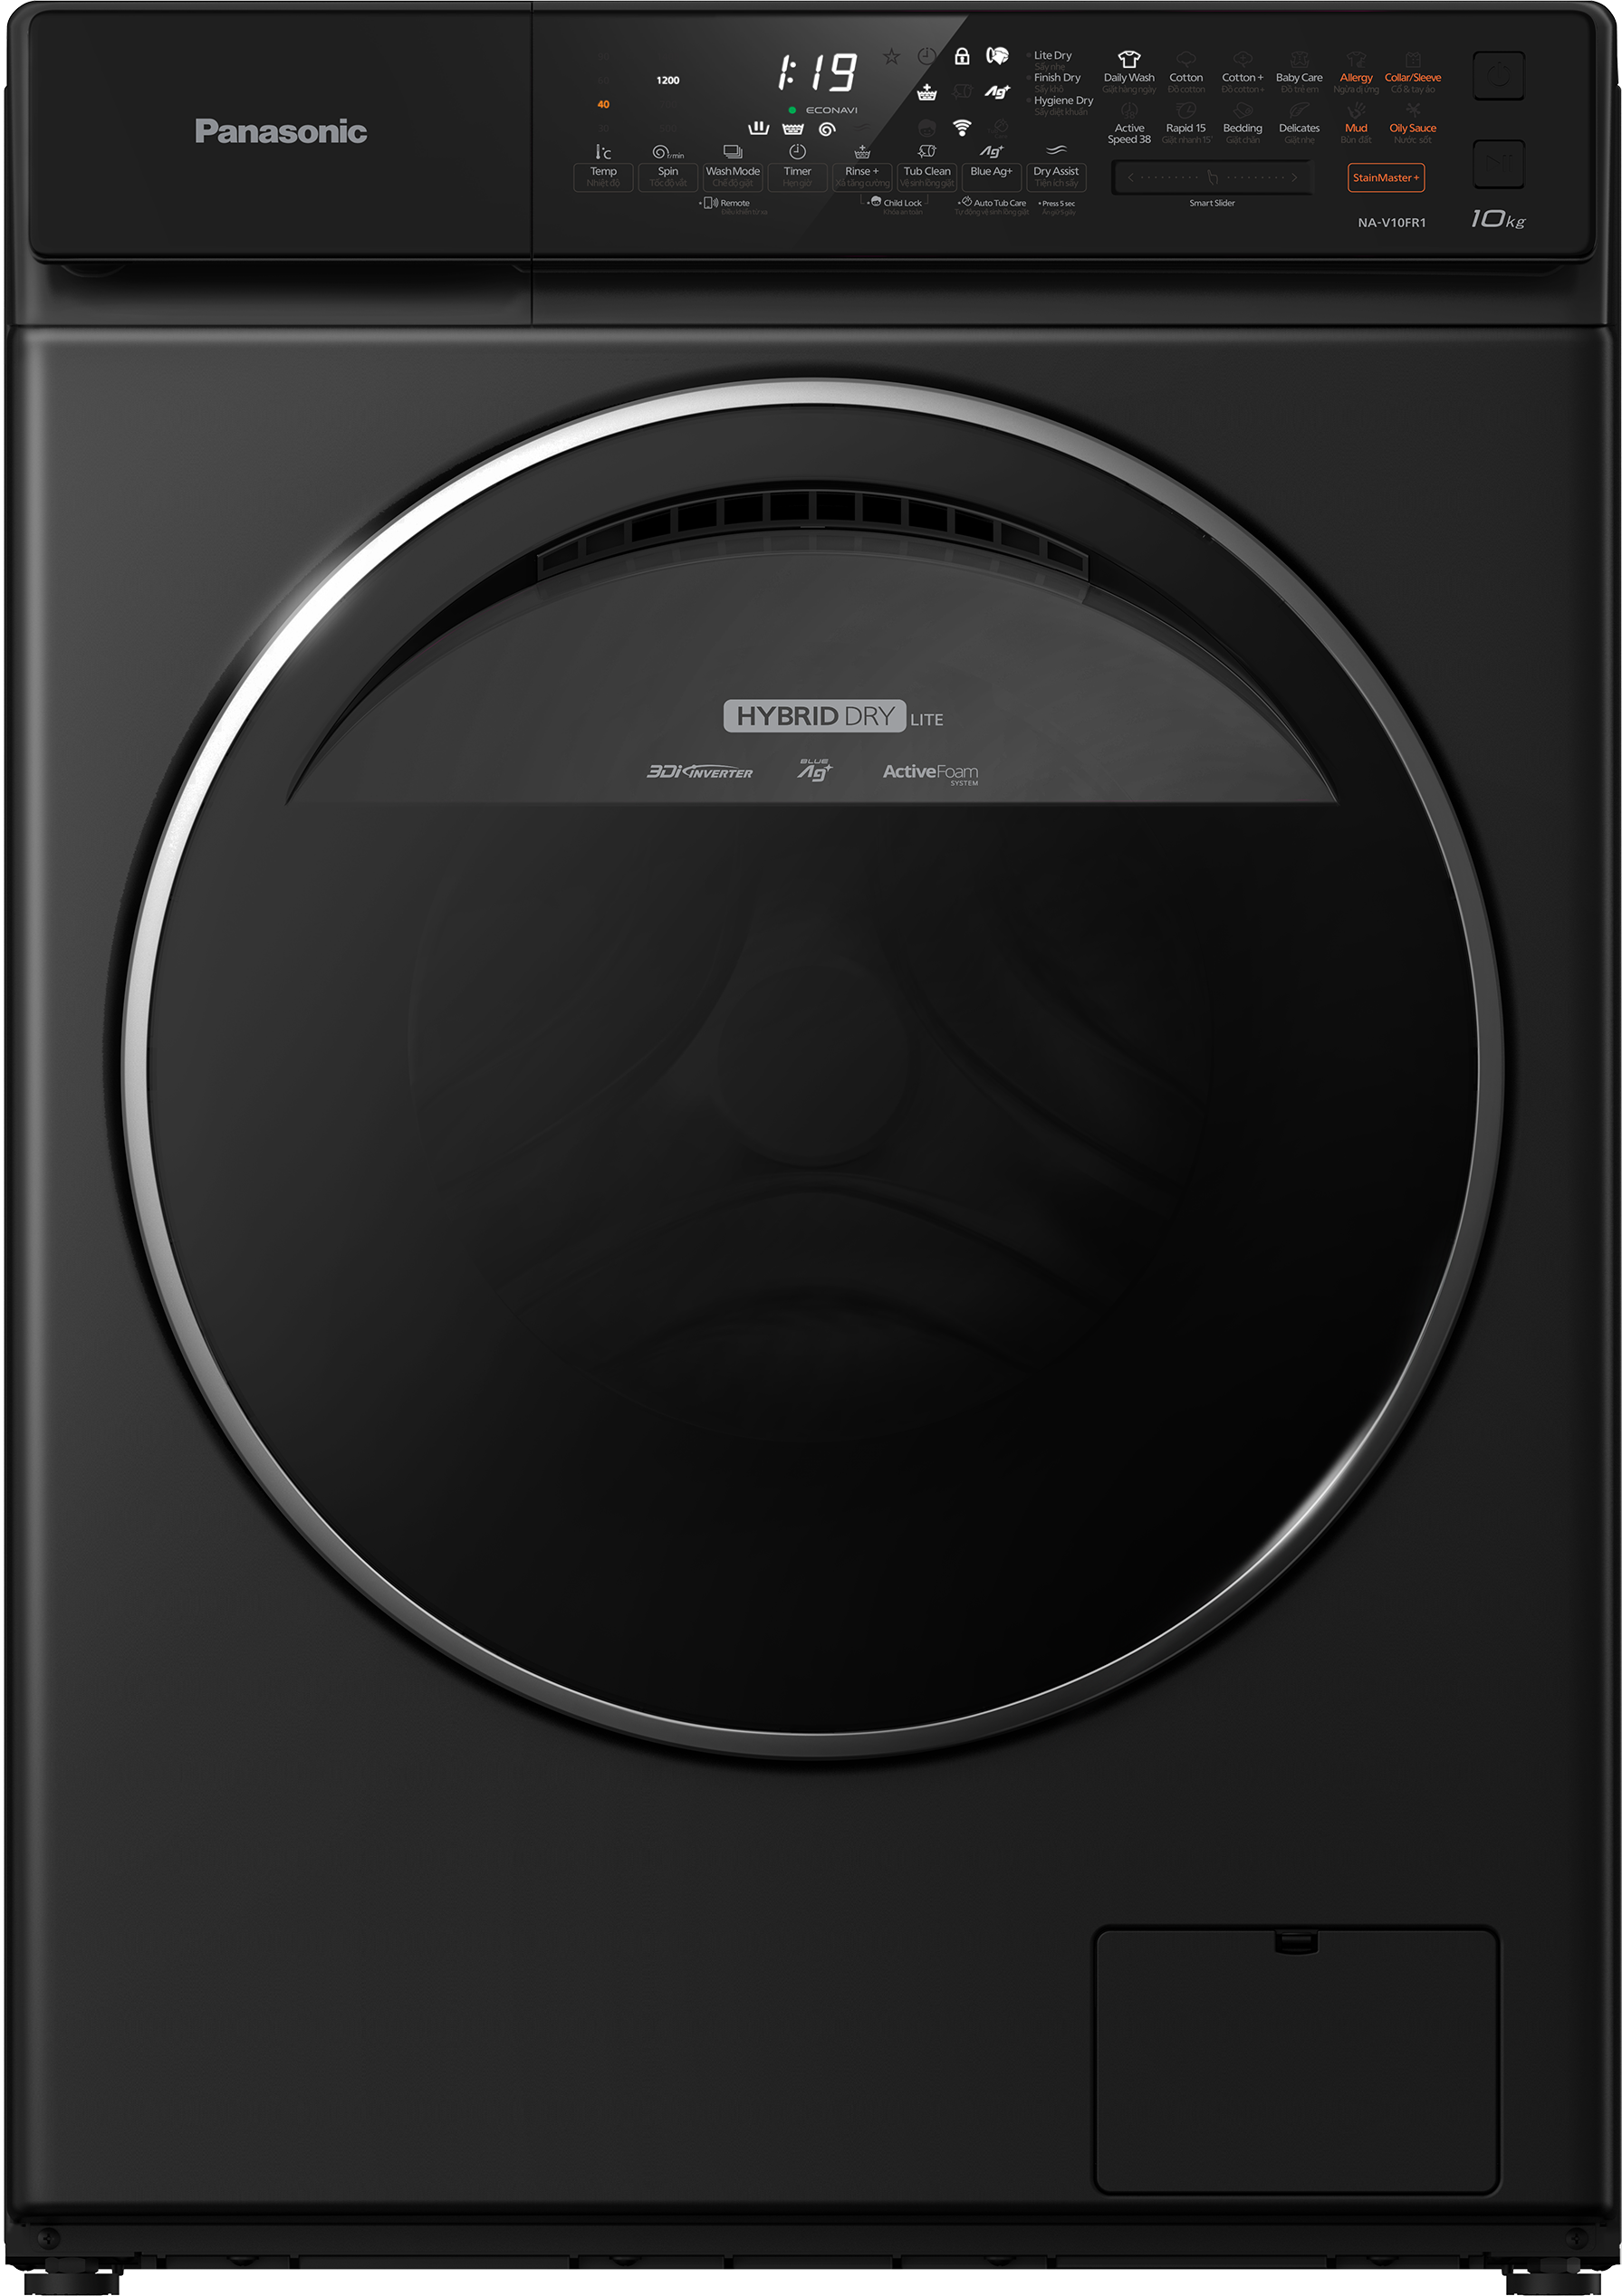 Máy Giặt Cửa Trước Panasonic 10 Kg NA-V10FR1BVT (Đen) - Diệt khuẩn đến 99.99% - Tính năng sấy tiện ích - Hàng Chính Hãng - Giao Toàn Quốc